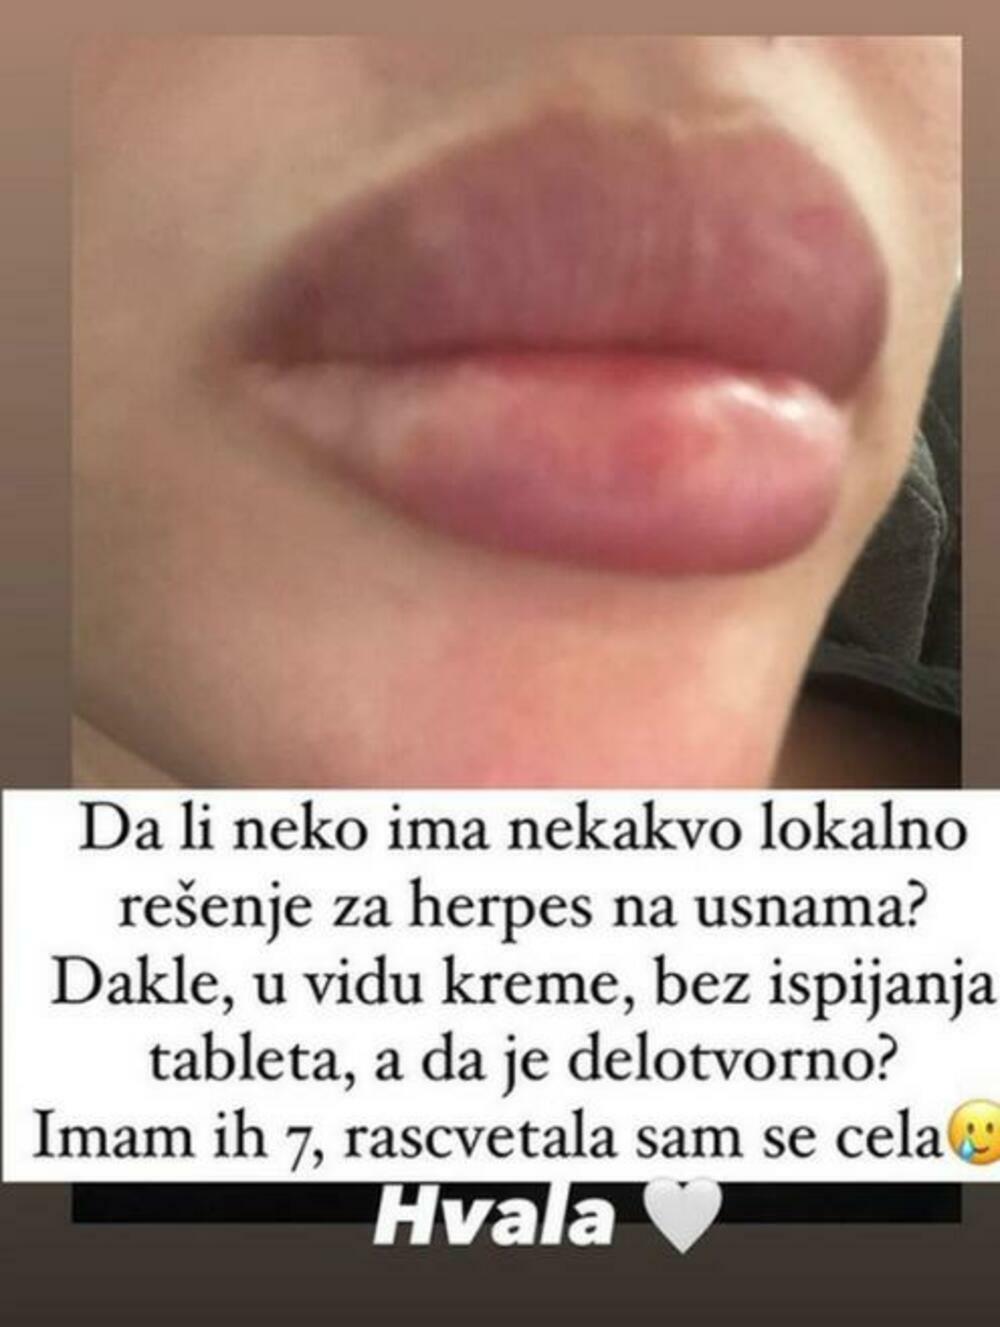 Mina Naumović uslikala je svoje usne u krupnom kadru i sve objavila na svom storiju na Instagramu